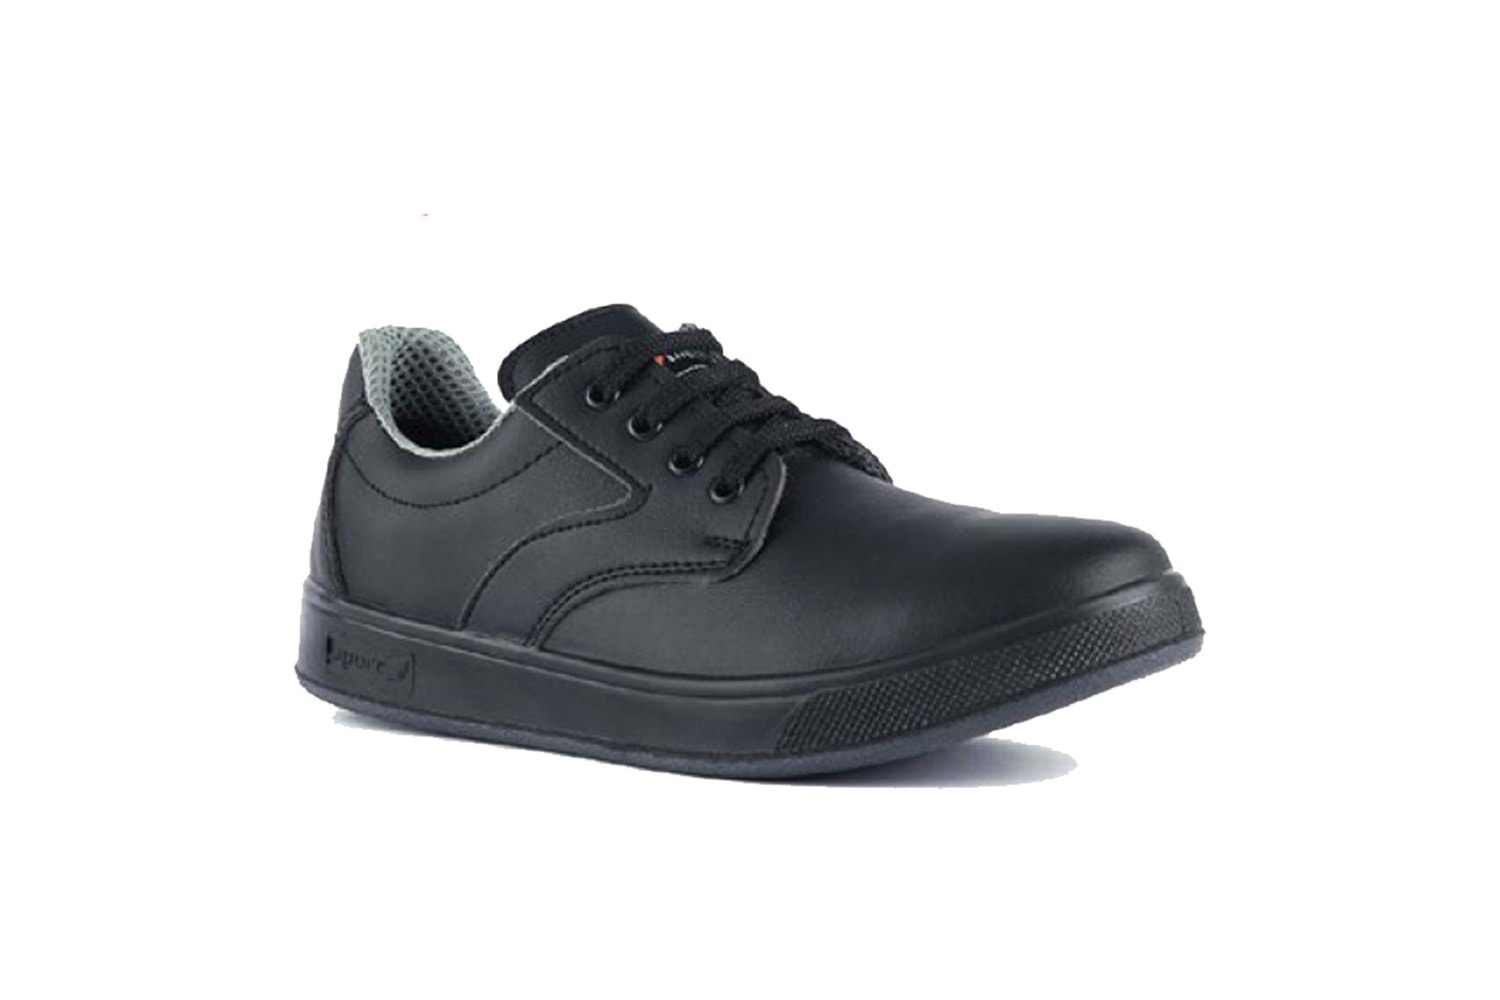 Mekap İş Ayakkabısı - Comfort 301 Black - 40